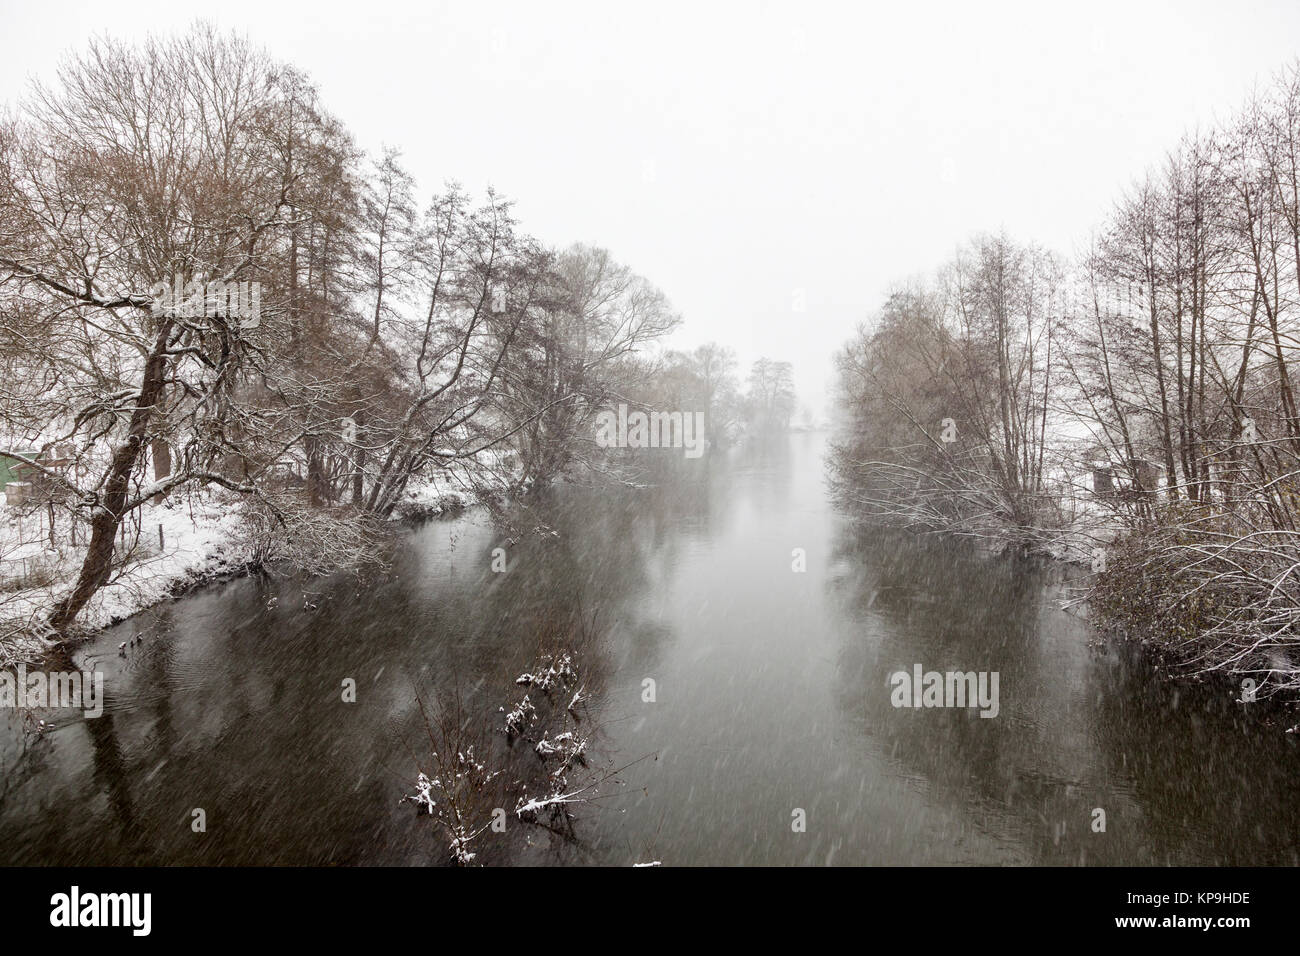 Río Dill en ciudad Sinn, provincia de Hesse durante las fuertes nevadas en invierno Foto de stock